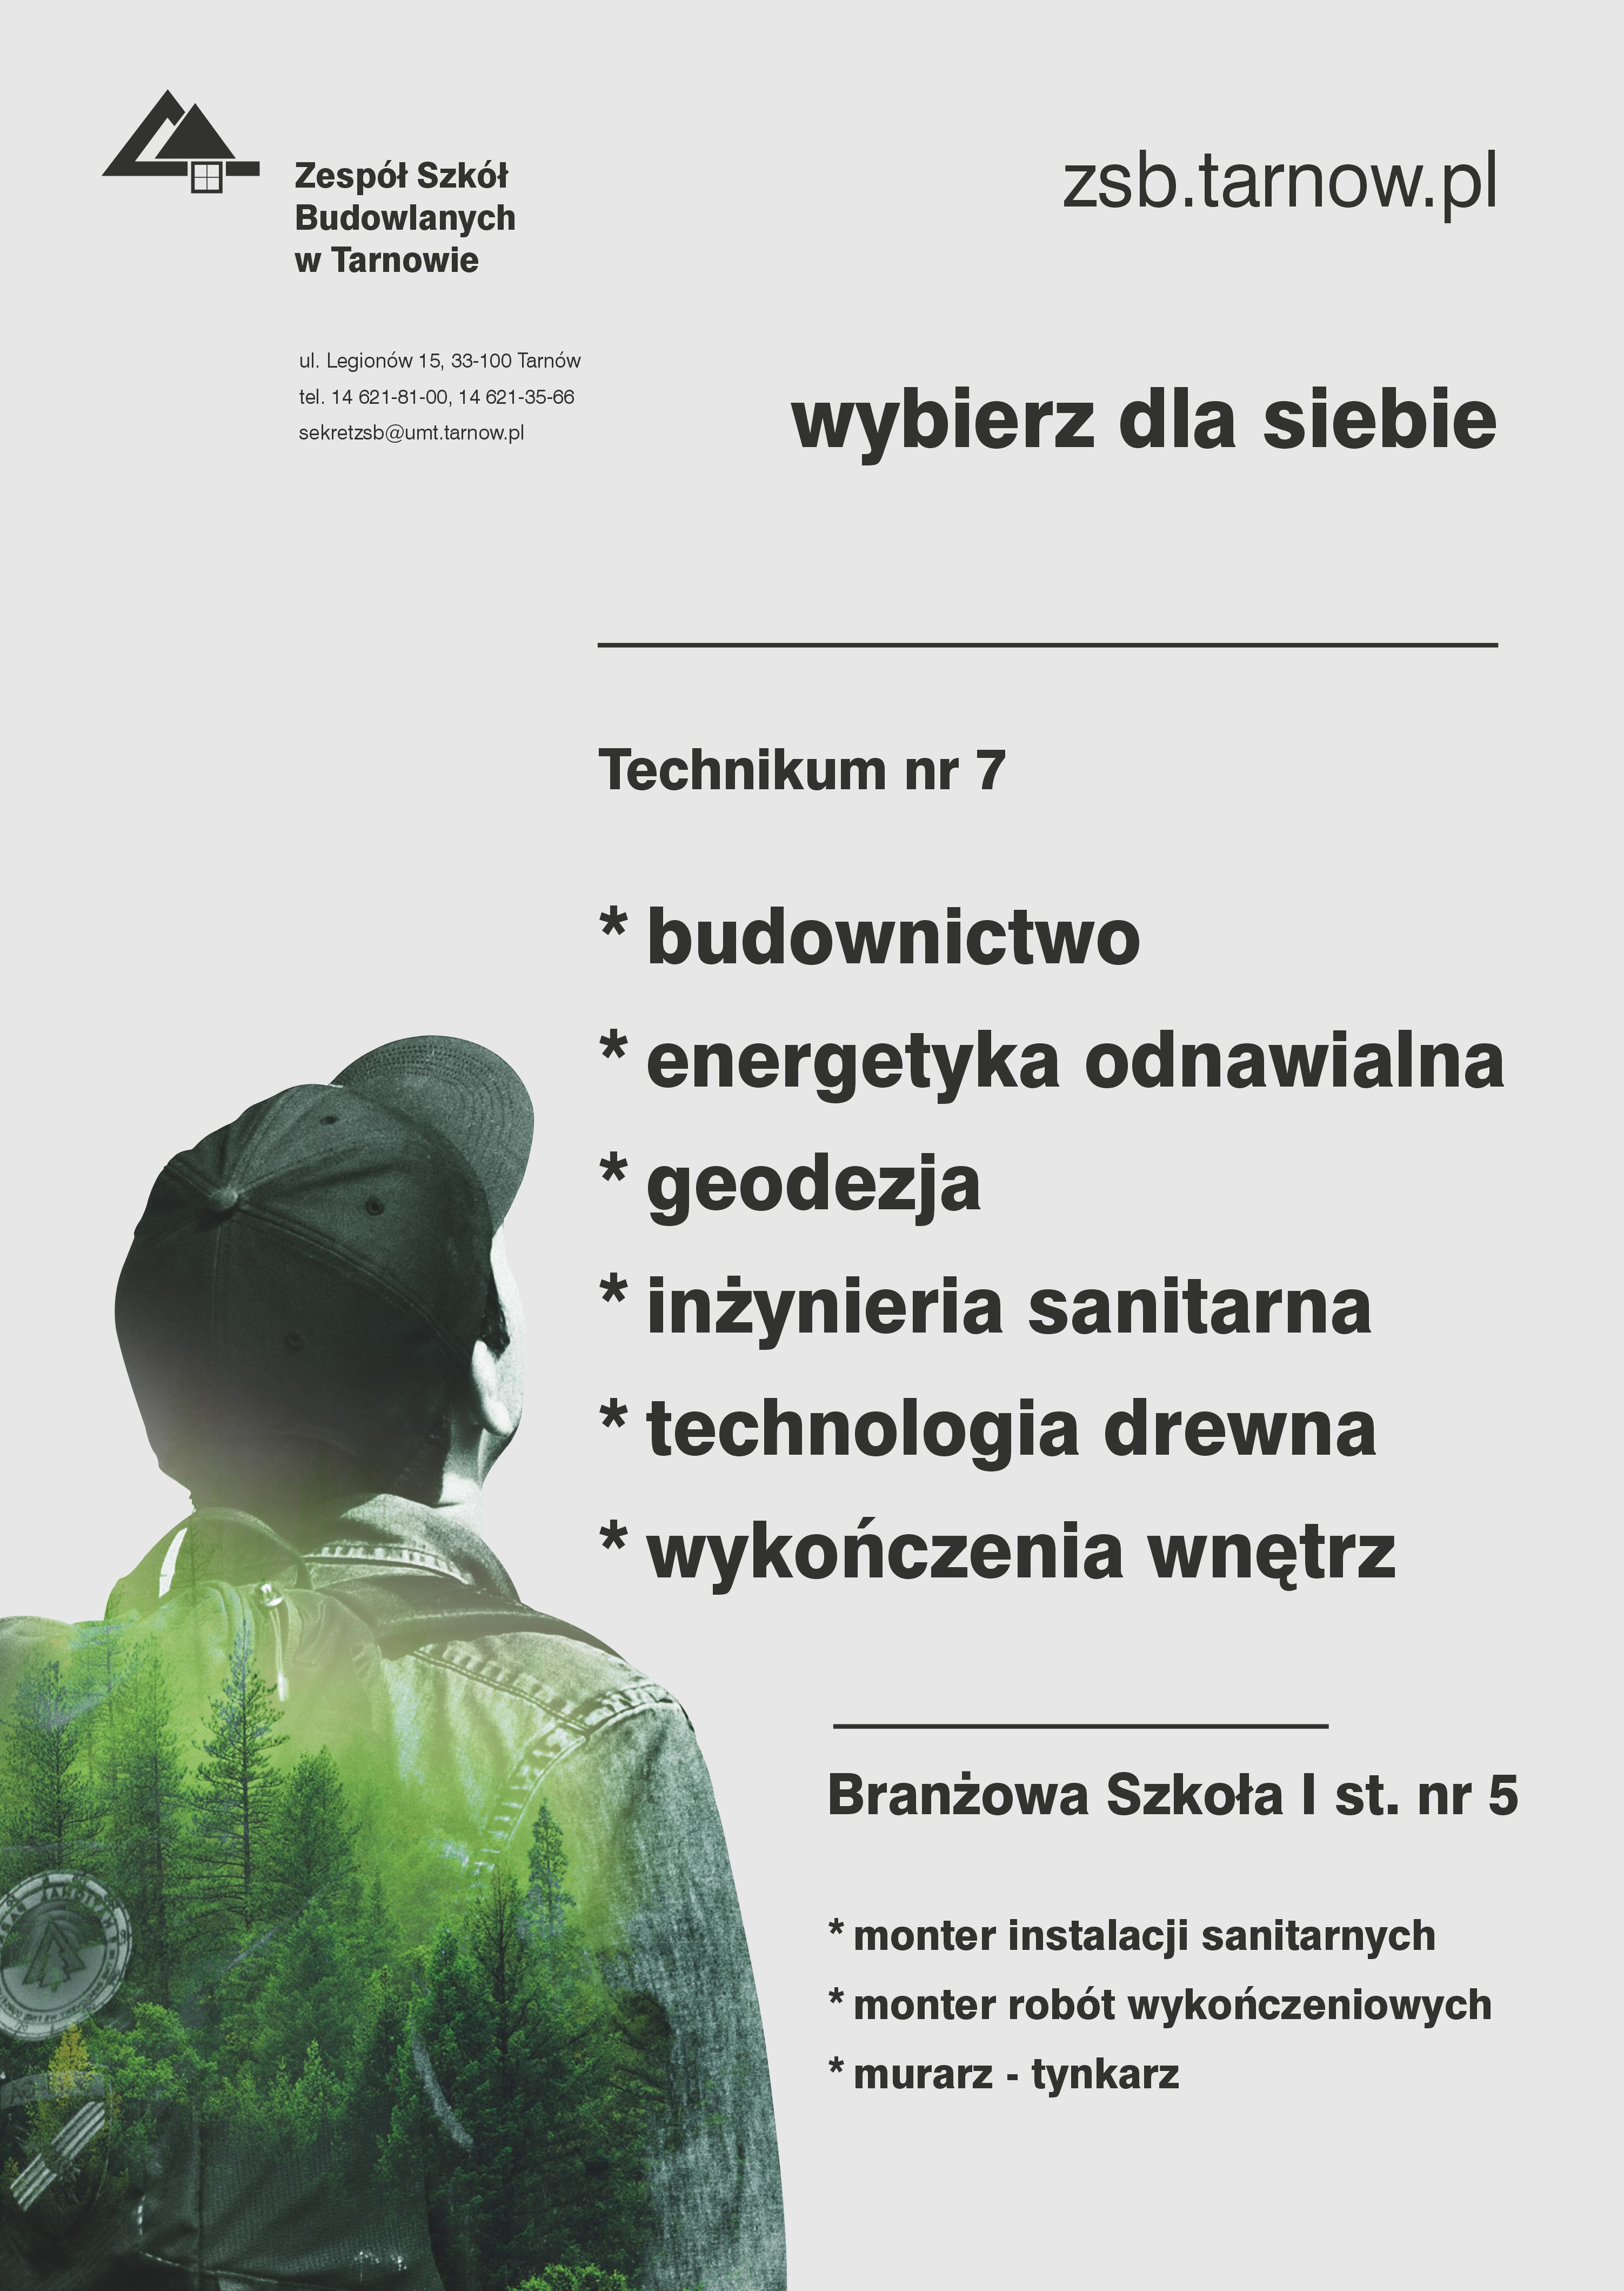 Plakat Zespołu Szkół Budowlanych z listą kierunków kształcenia w technikum i szkole branżowej.